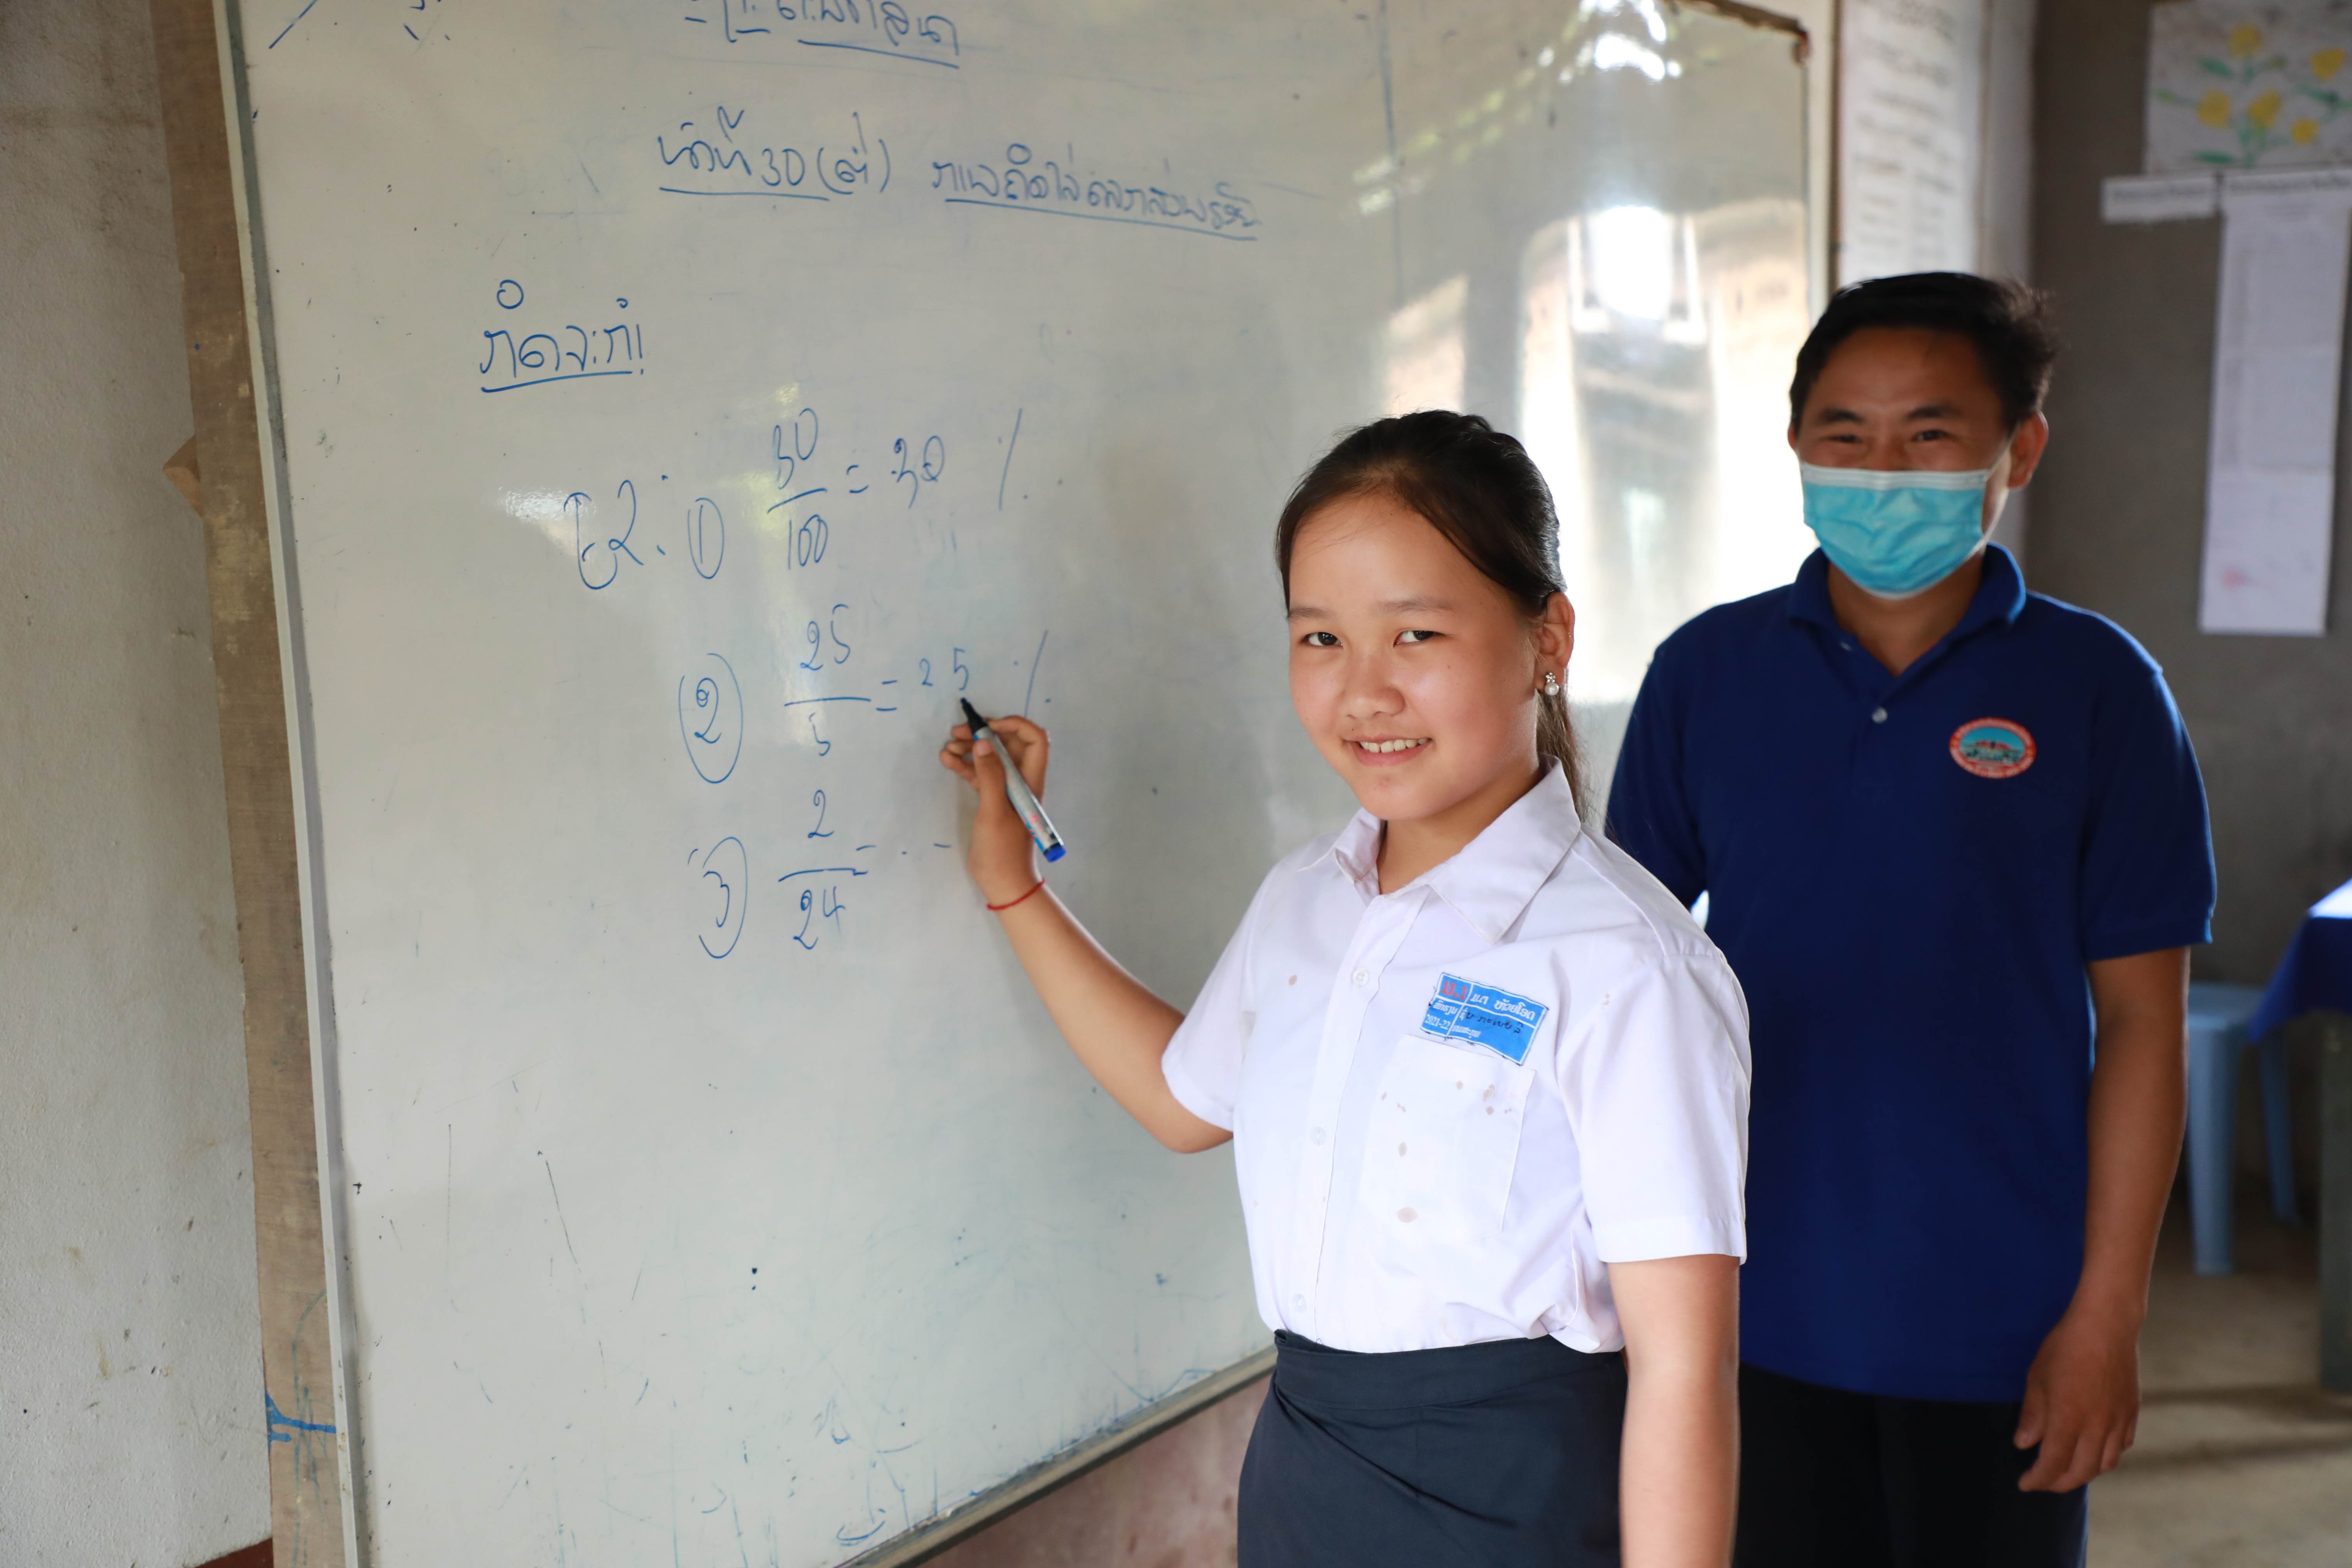 Una estudiante de Laos escribe en una pizarra en la escuela mientras sonríe a la cámara. Su profesor supervisa en el fondo mientras lleva una mascarilla.